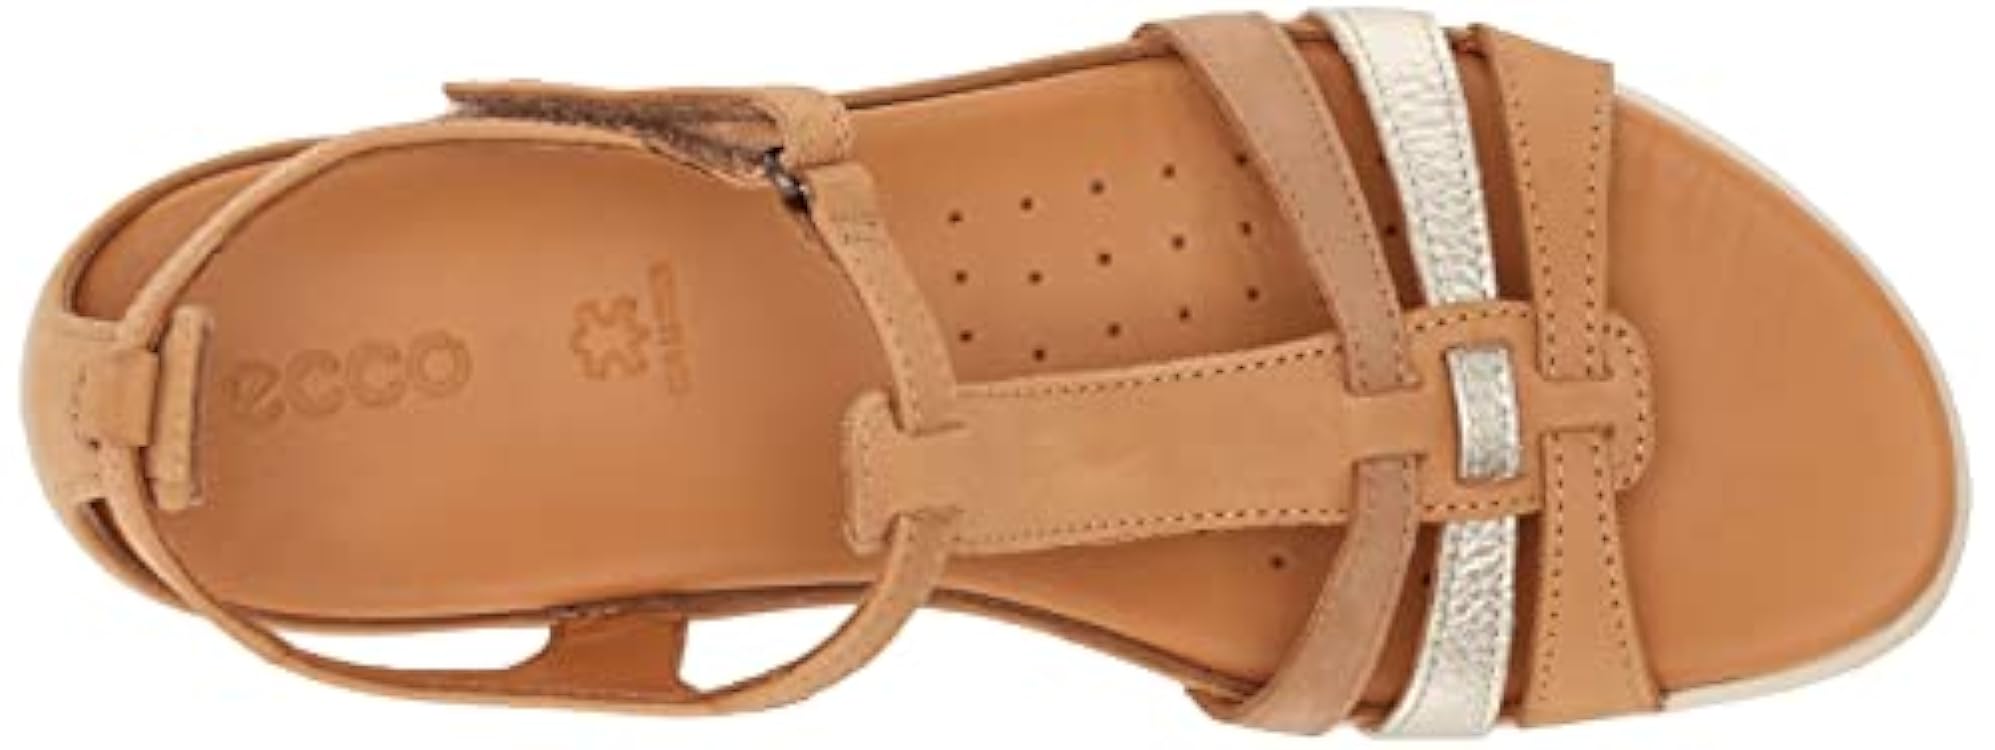 ECCO Flash T-Strap Sandal, Donna 129118080